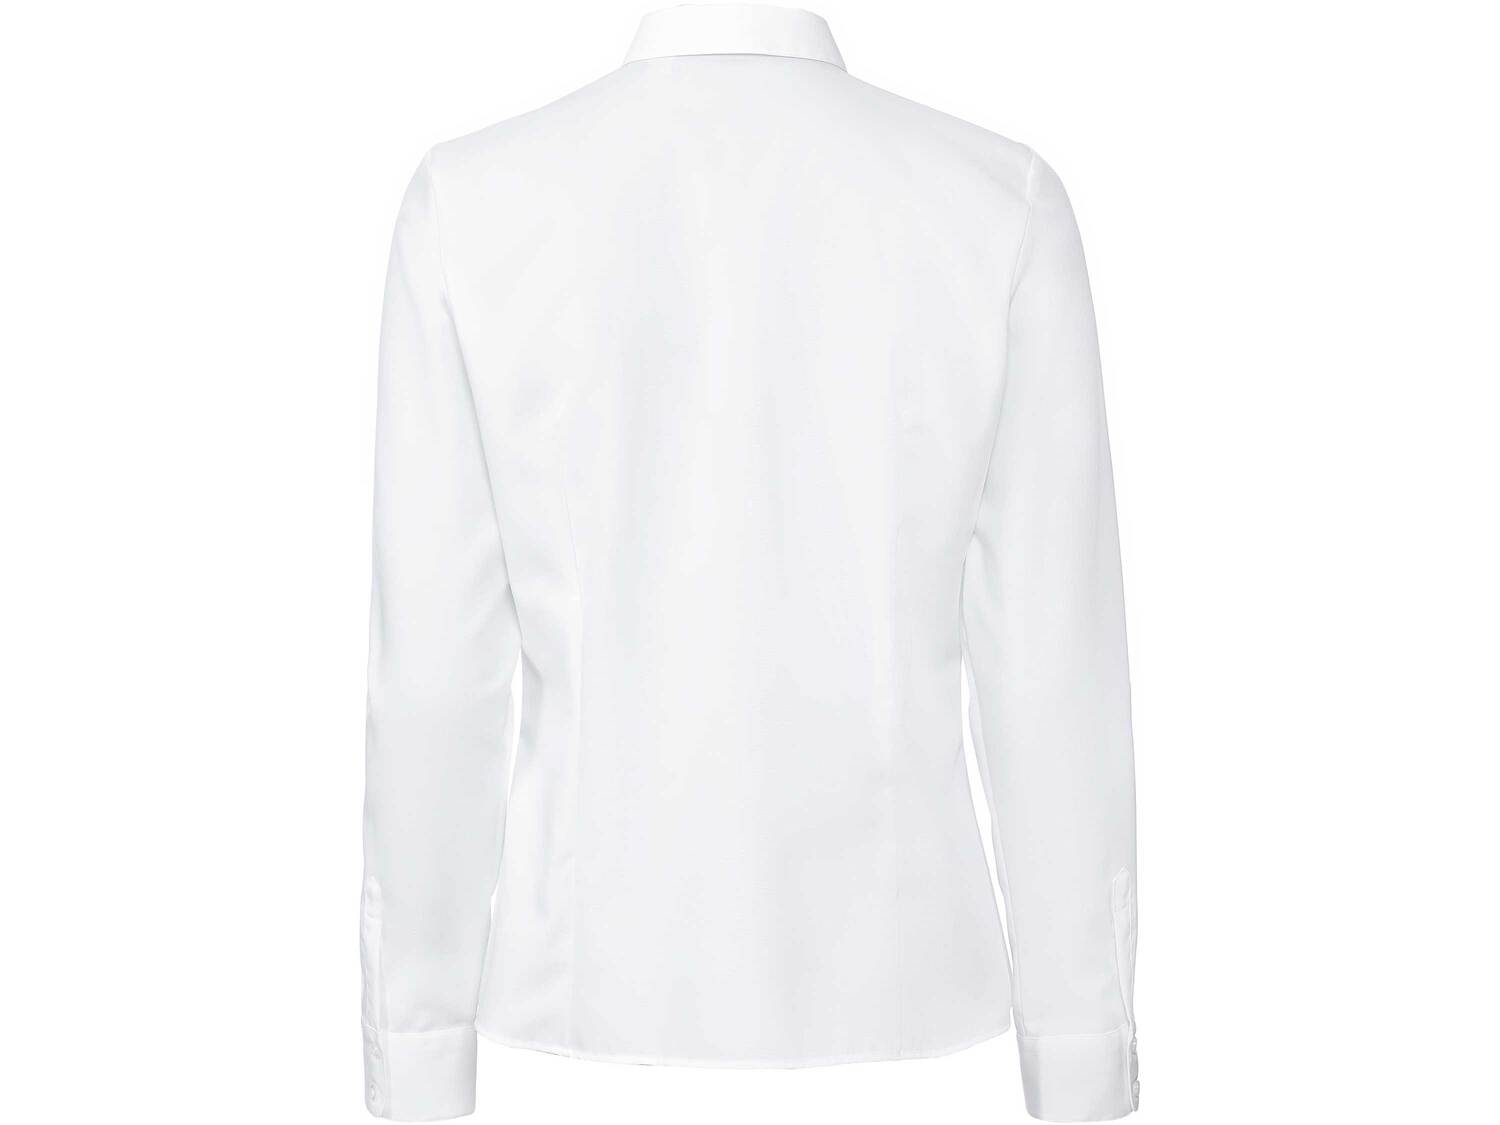 Bluzka damska z bawełny Esmara, cena 44,00 PLN 
- rozmiary: 34-44
- 100% bawełny
- ...